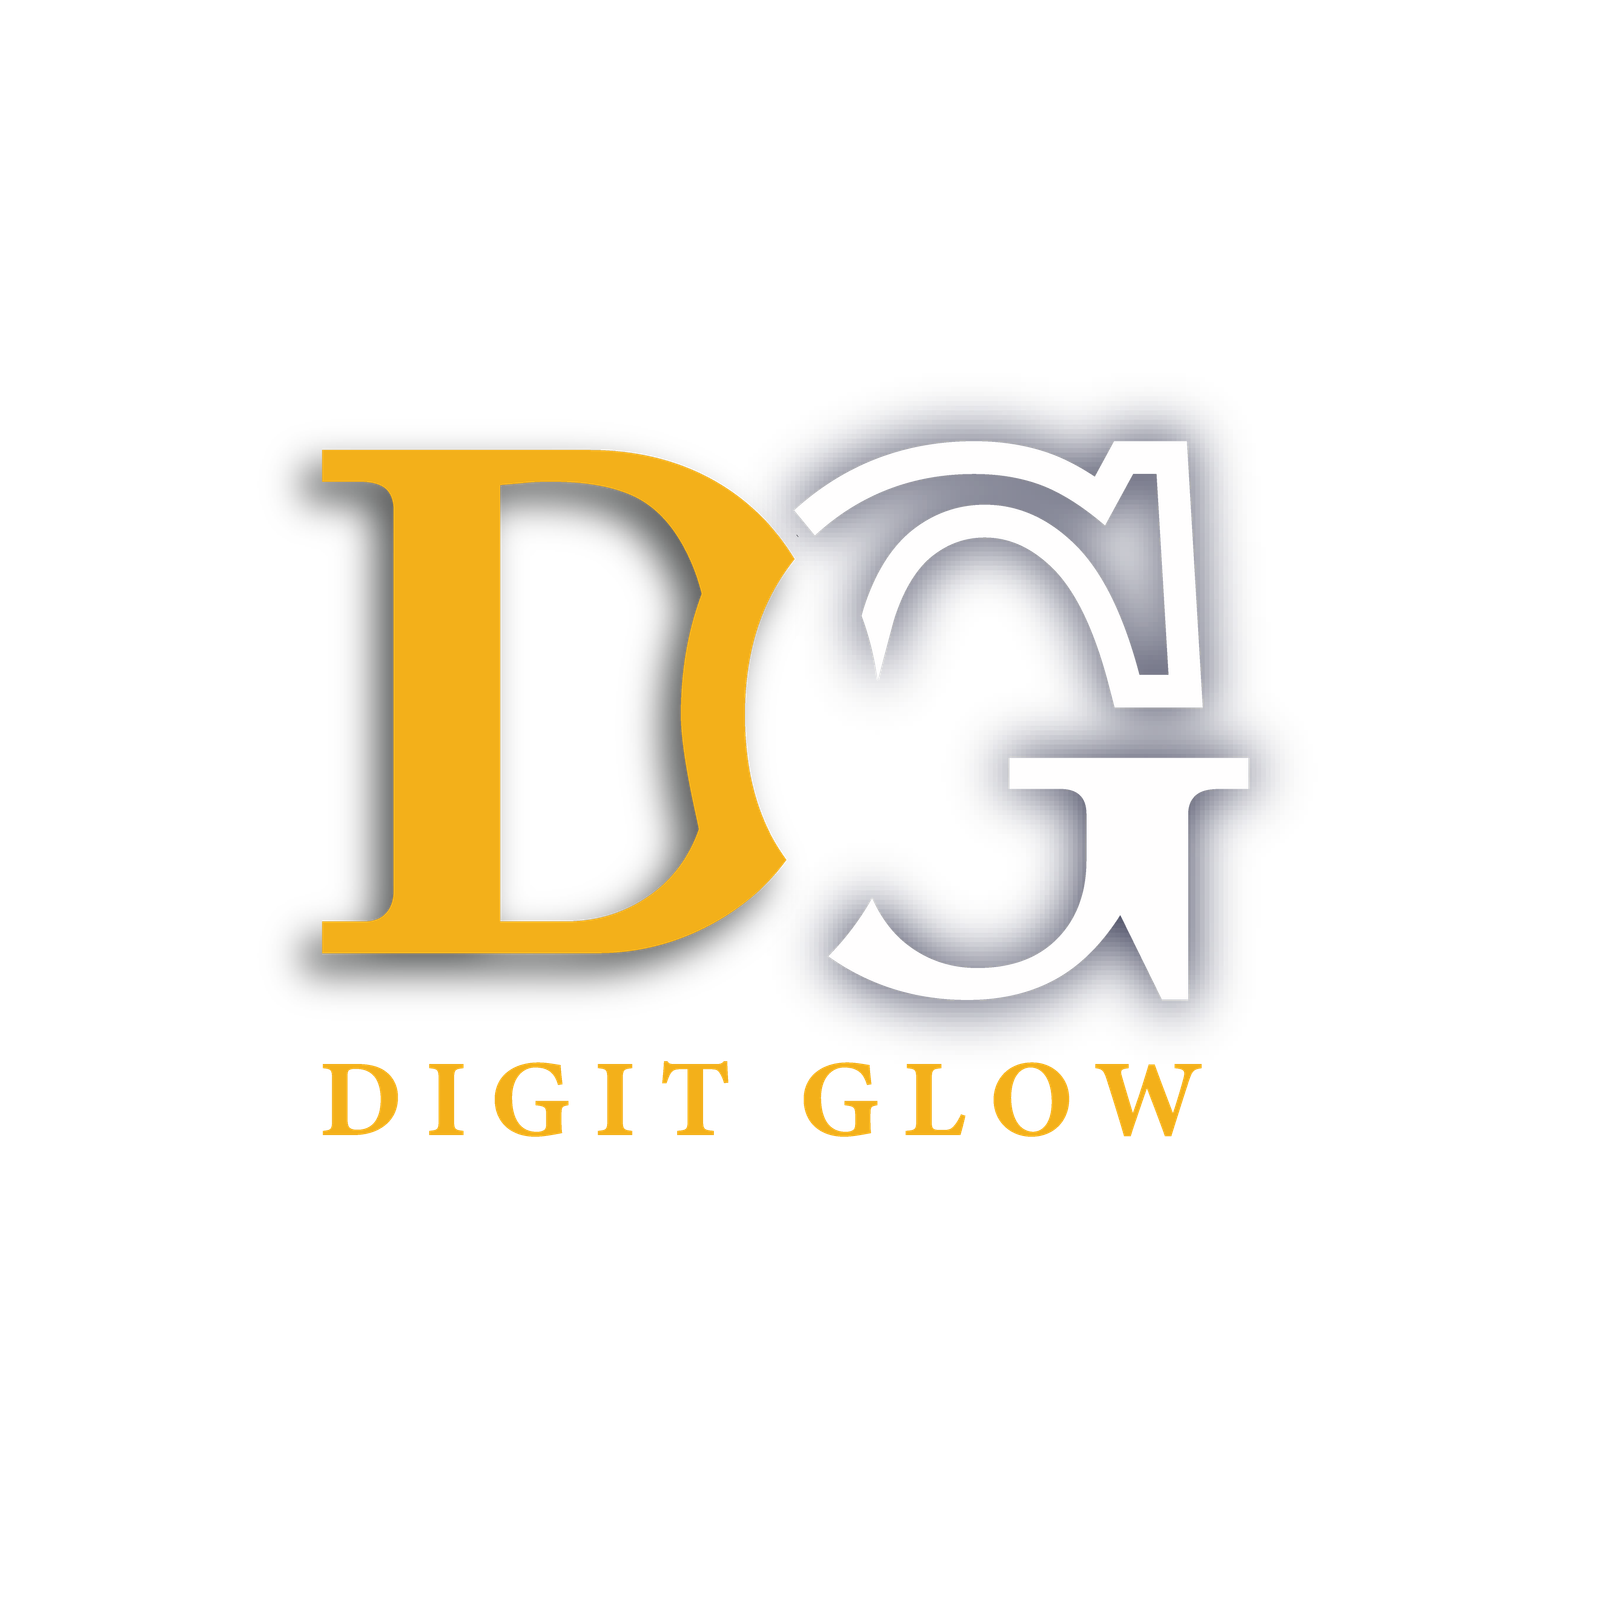 Digit Glow